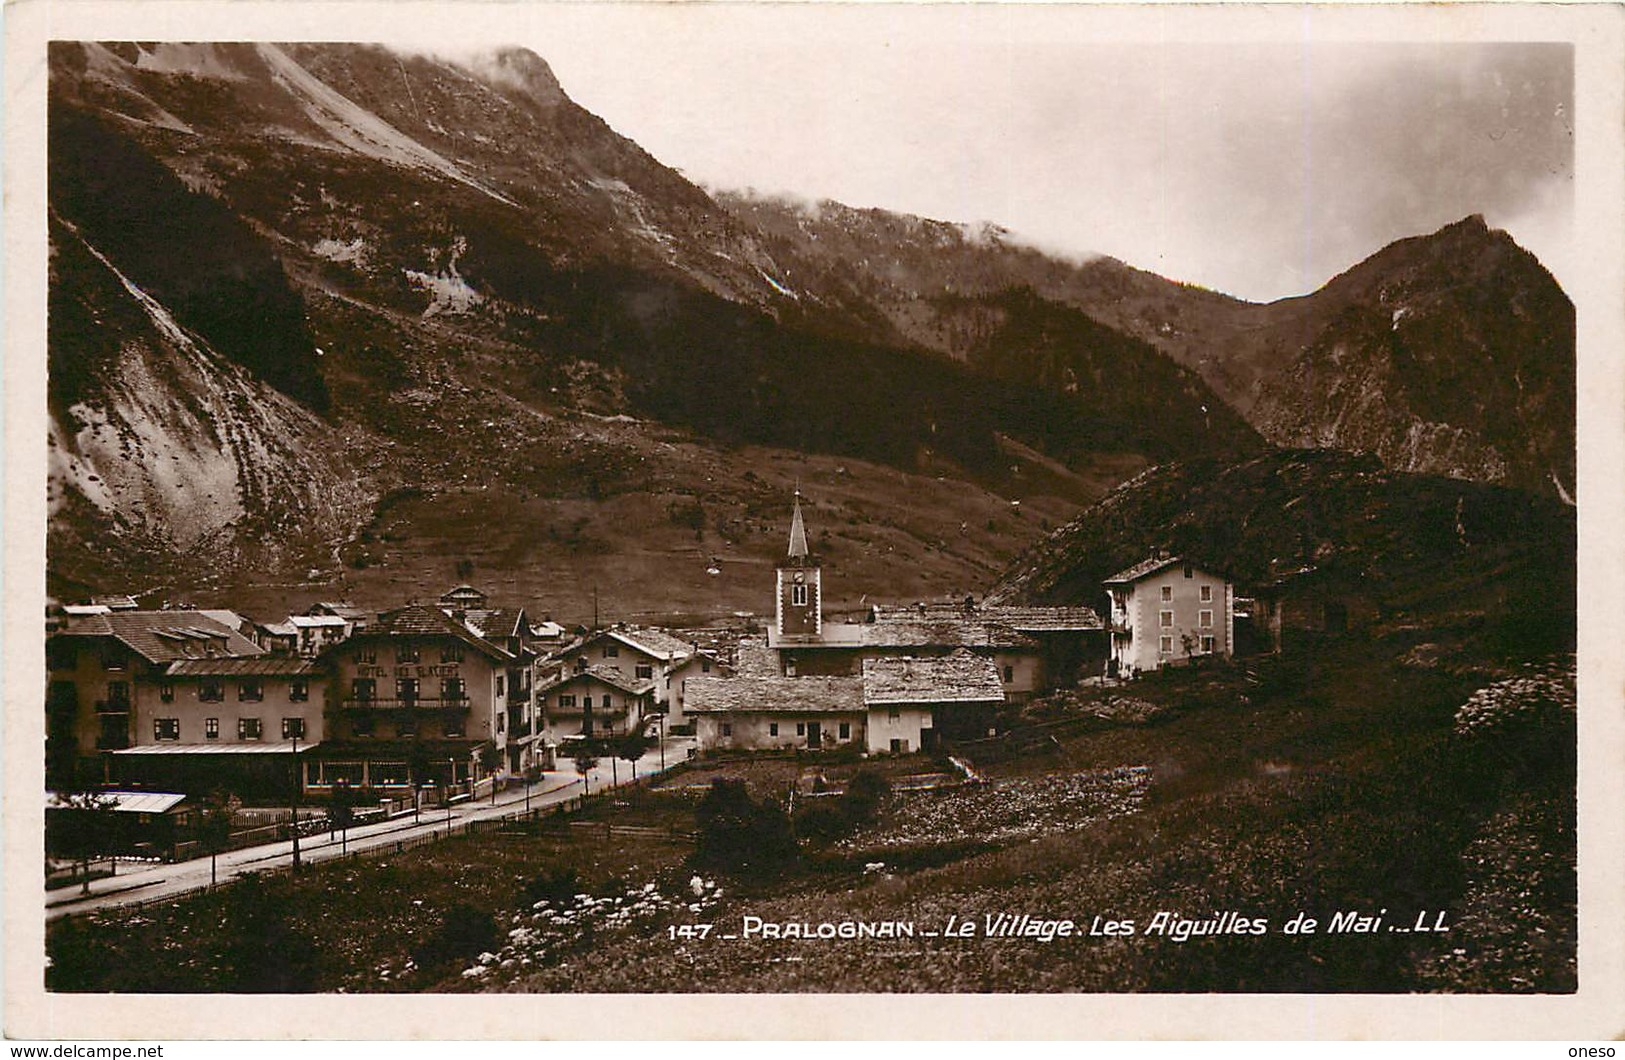 Savoie - Lot N° 462 - Lots en vrac - Lot divers du département de la Savoie - Lot de 87 cartes